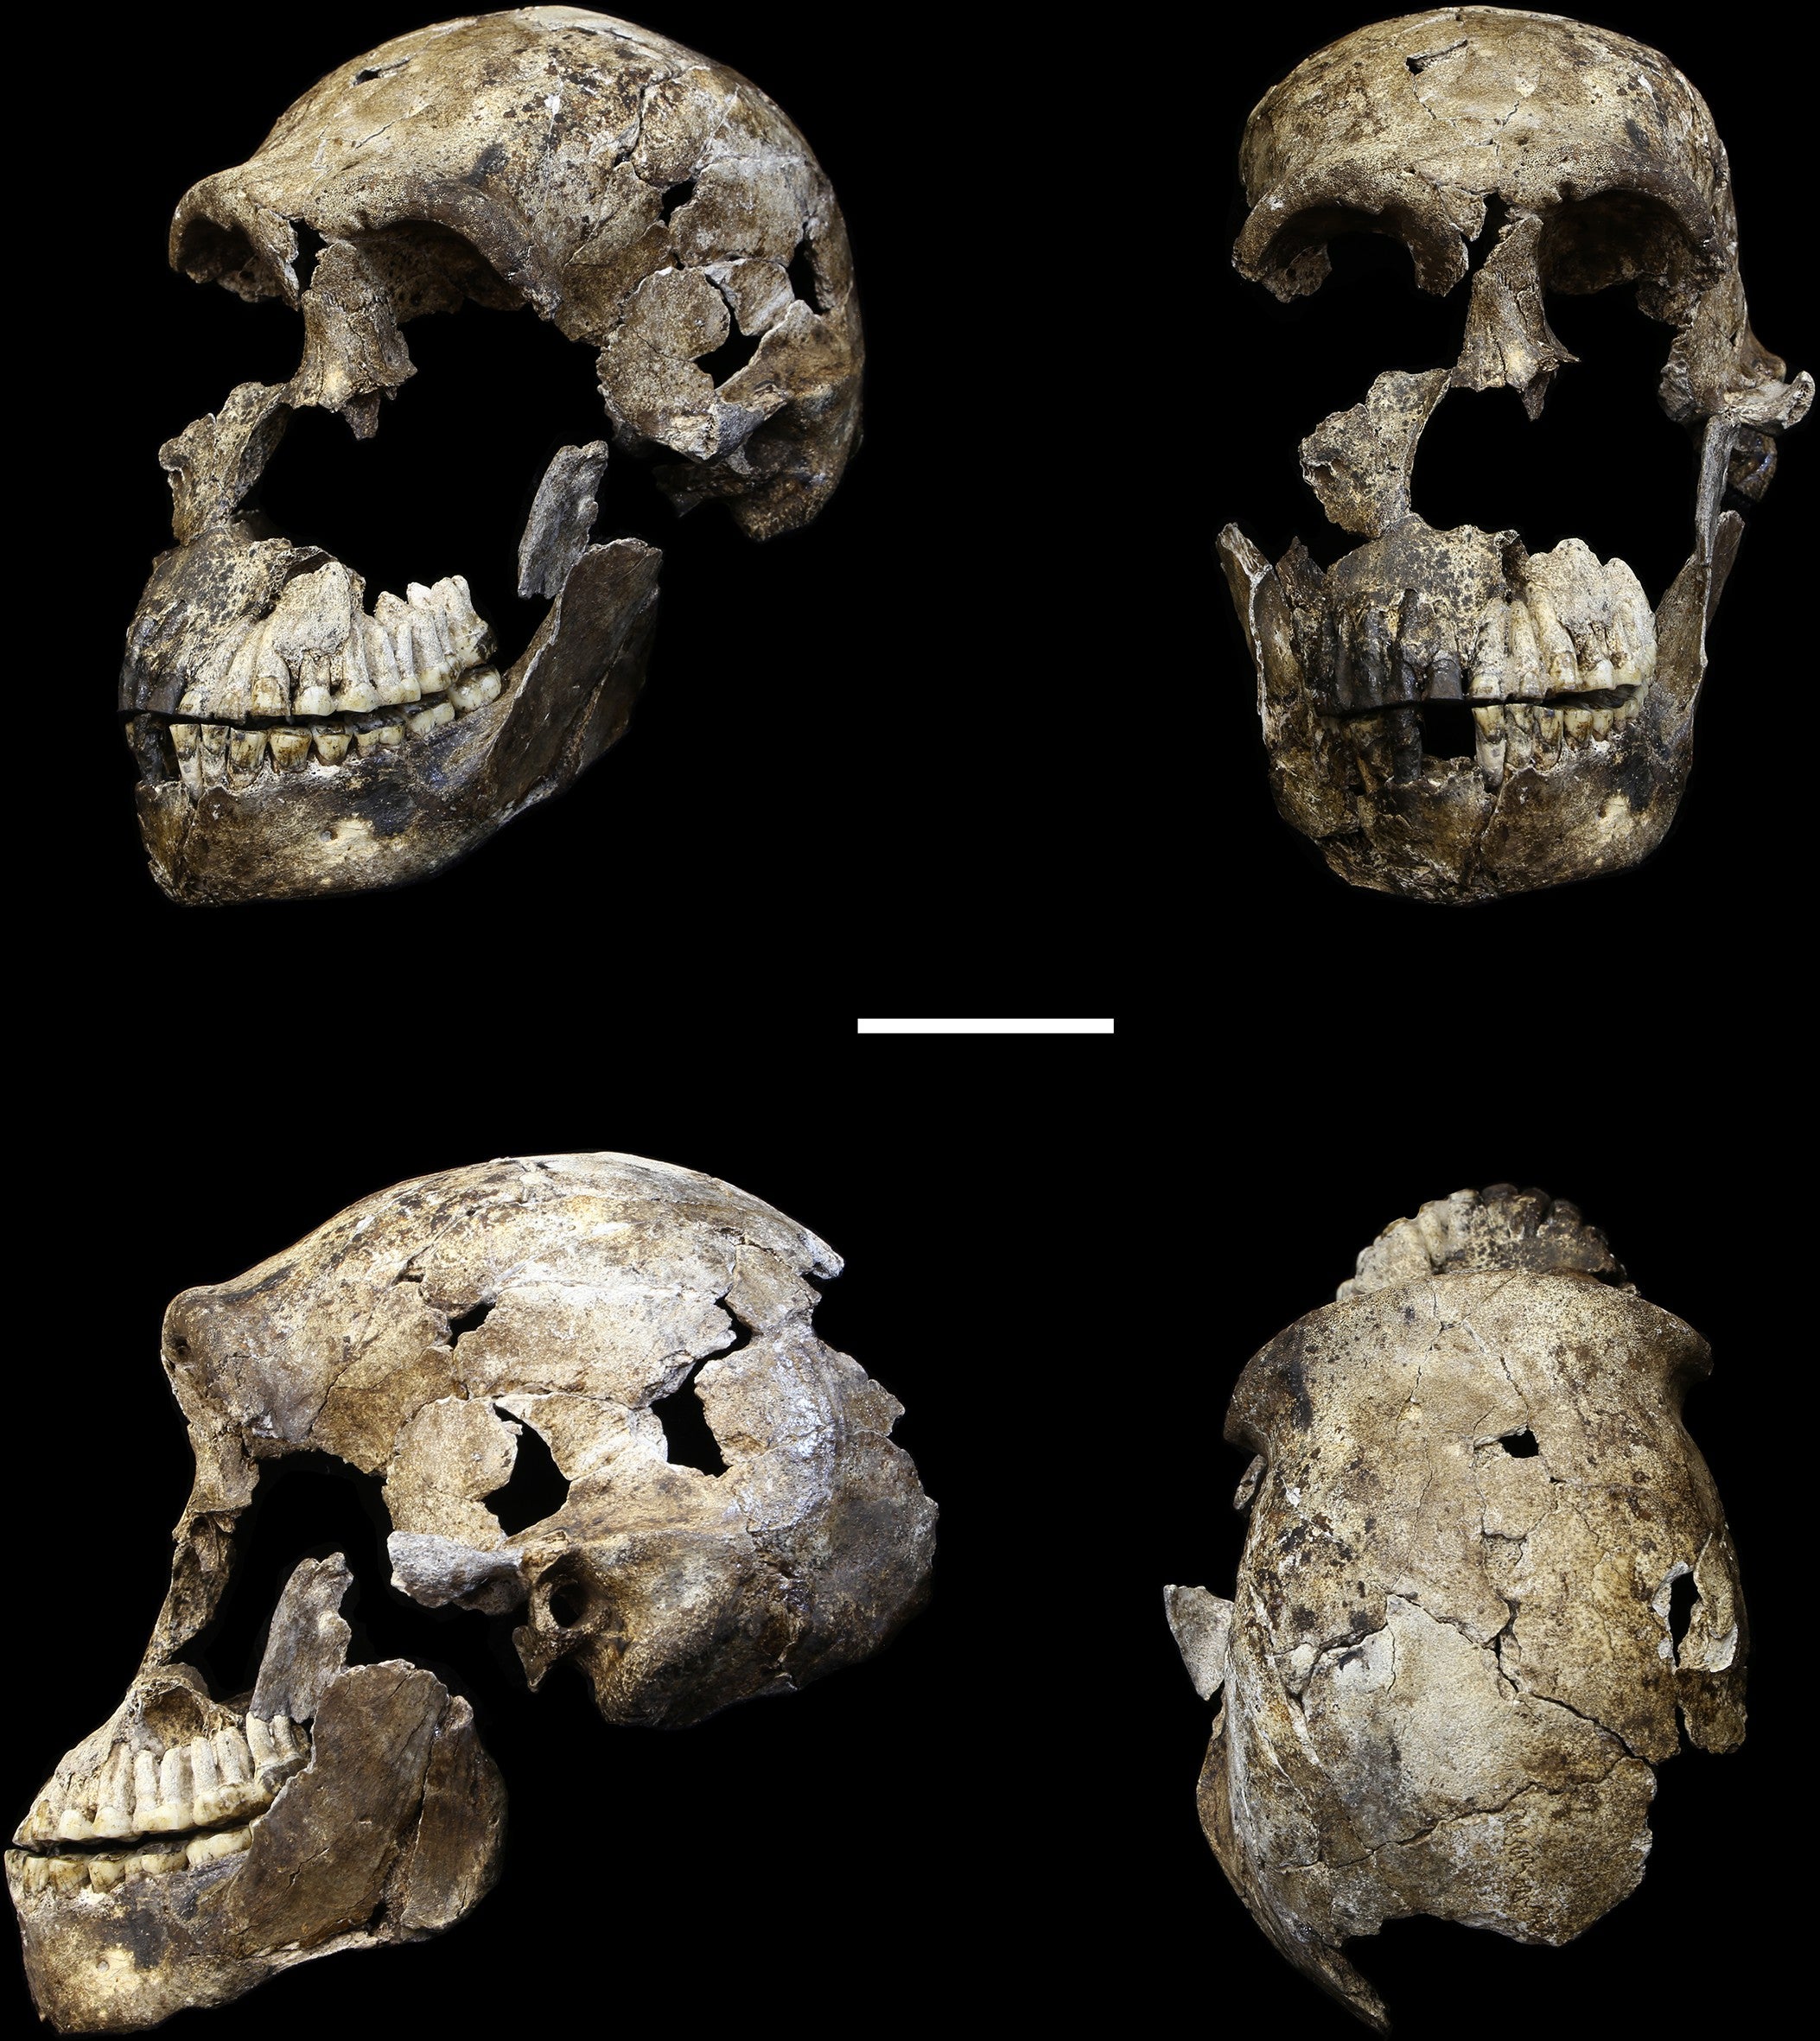 Los científicos bautizan a la especie con el nombre de Homo naledi